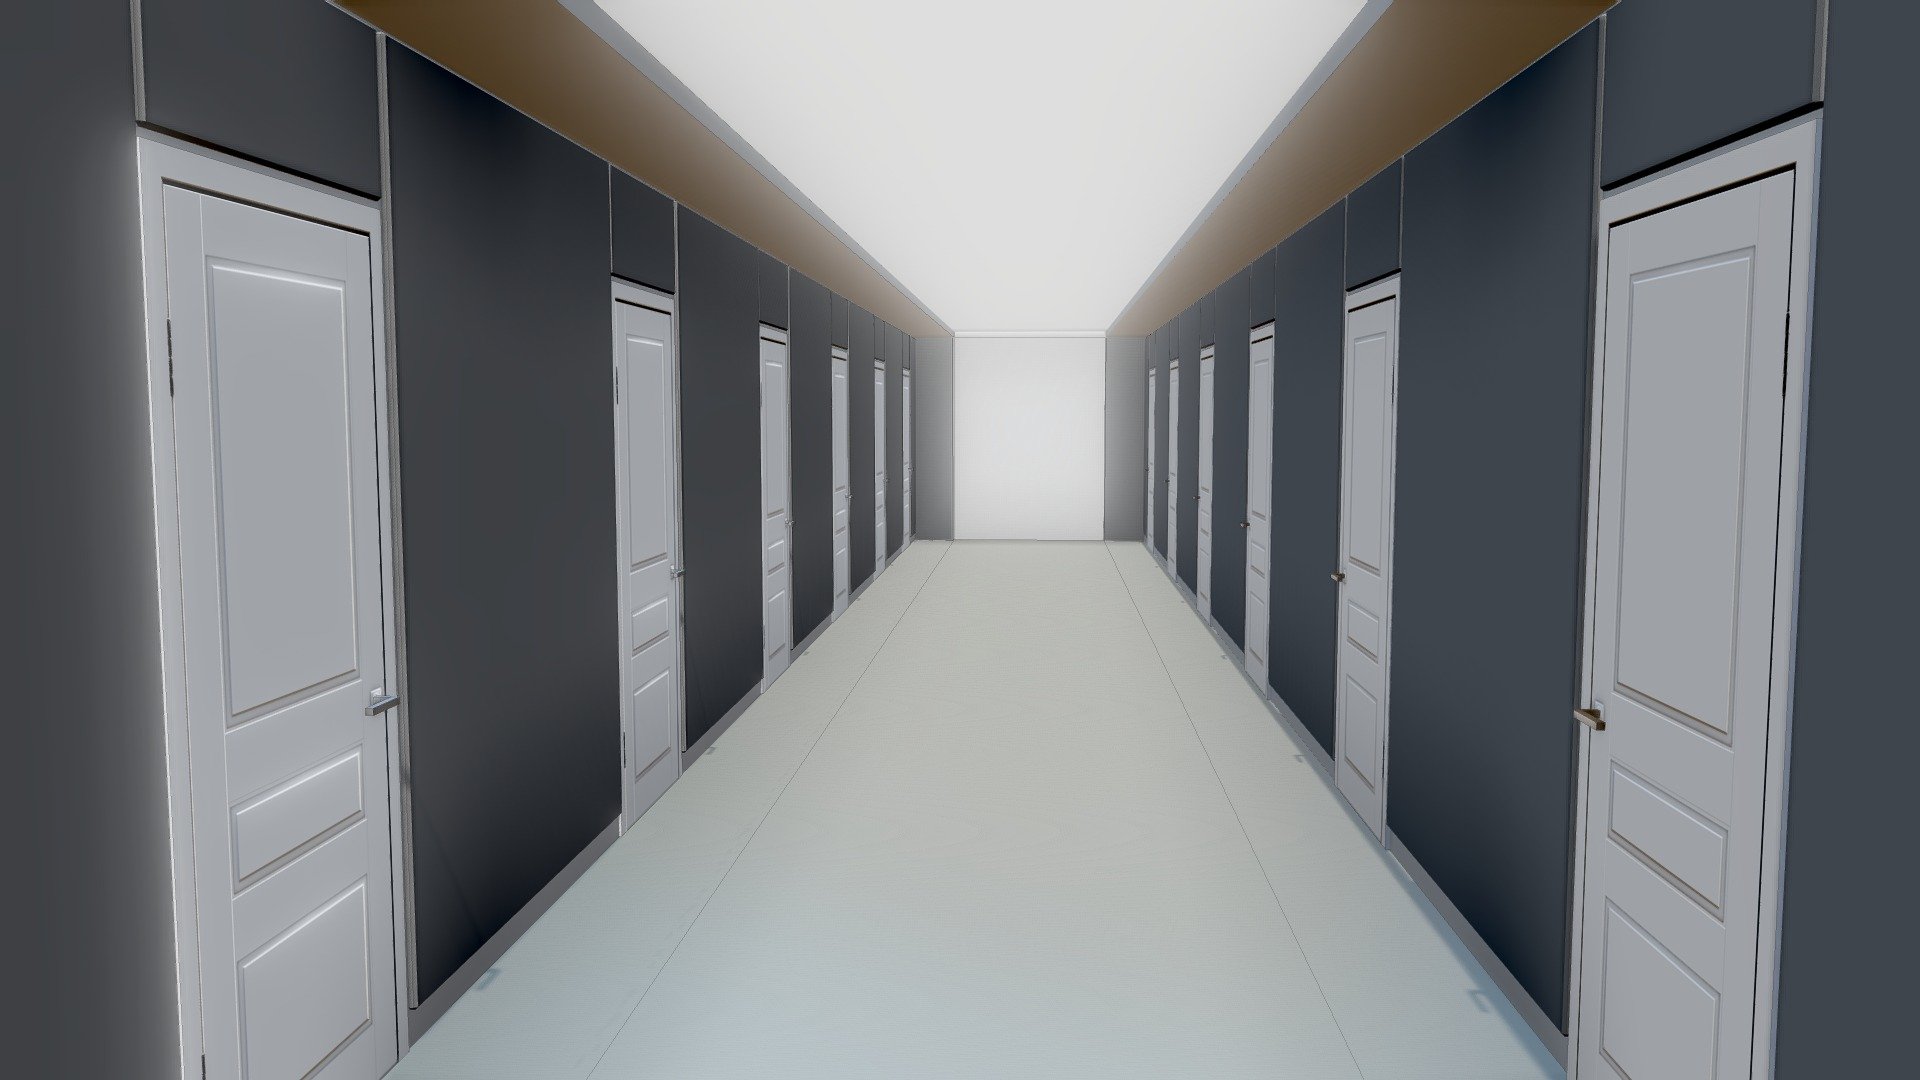 Doors corridor - Doors corridor - Download Free 3D model by Nevermoredmb 3d model